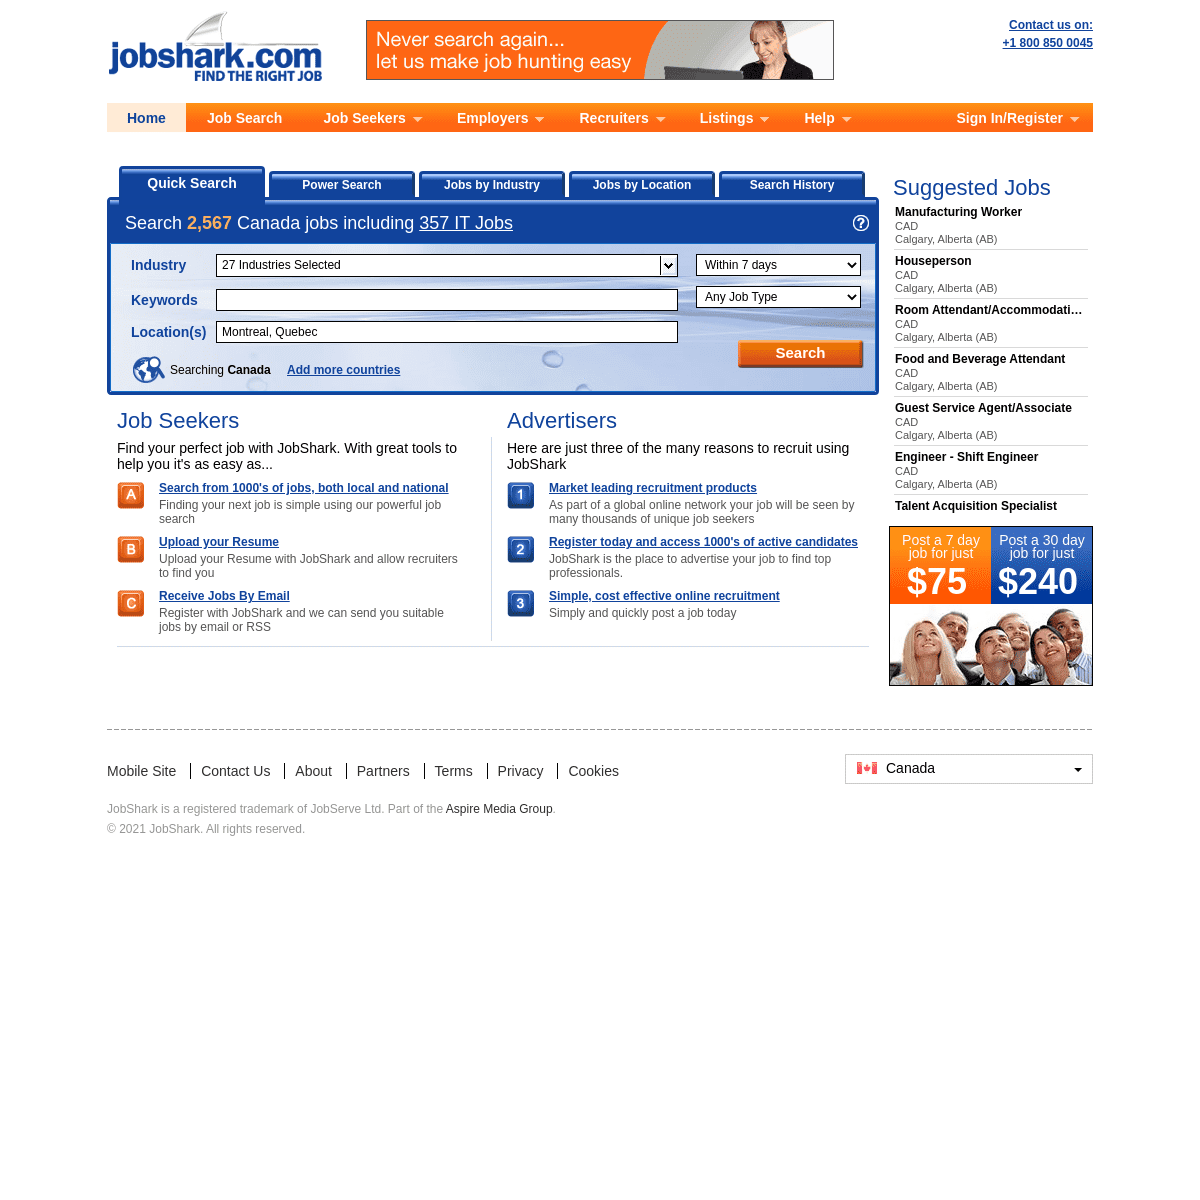 A complete backup of https://jobshark.com